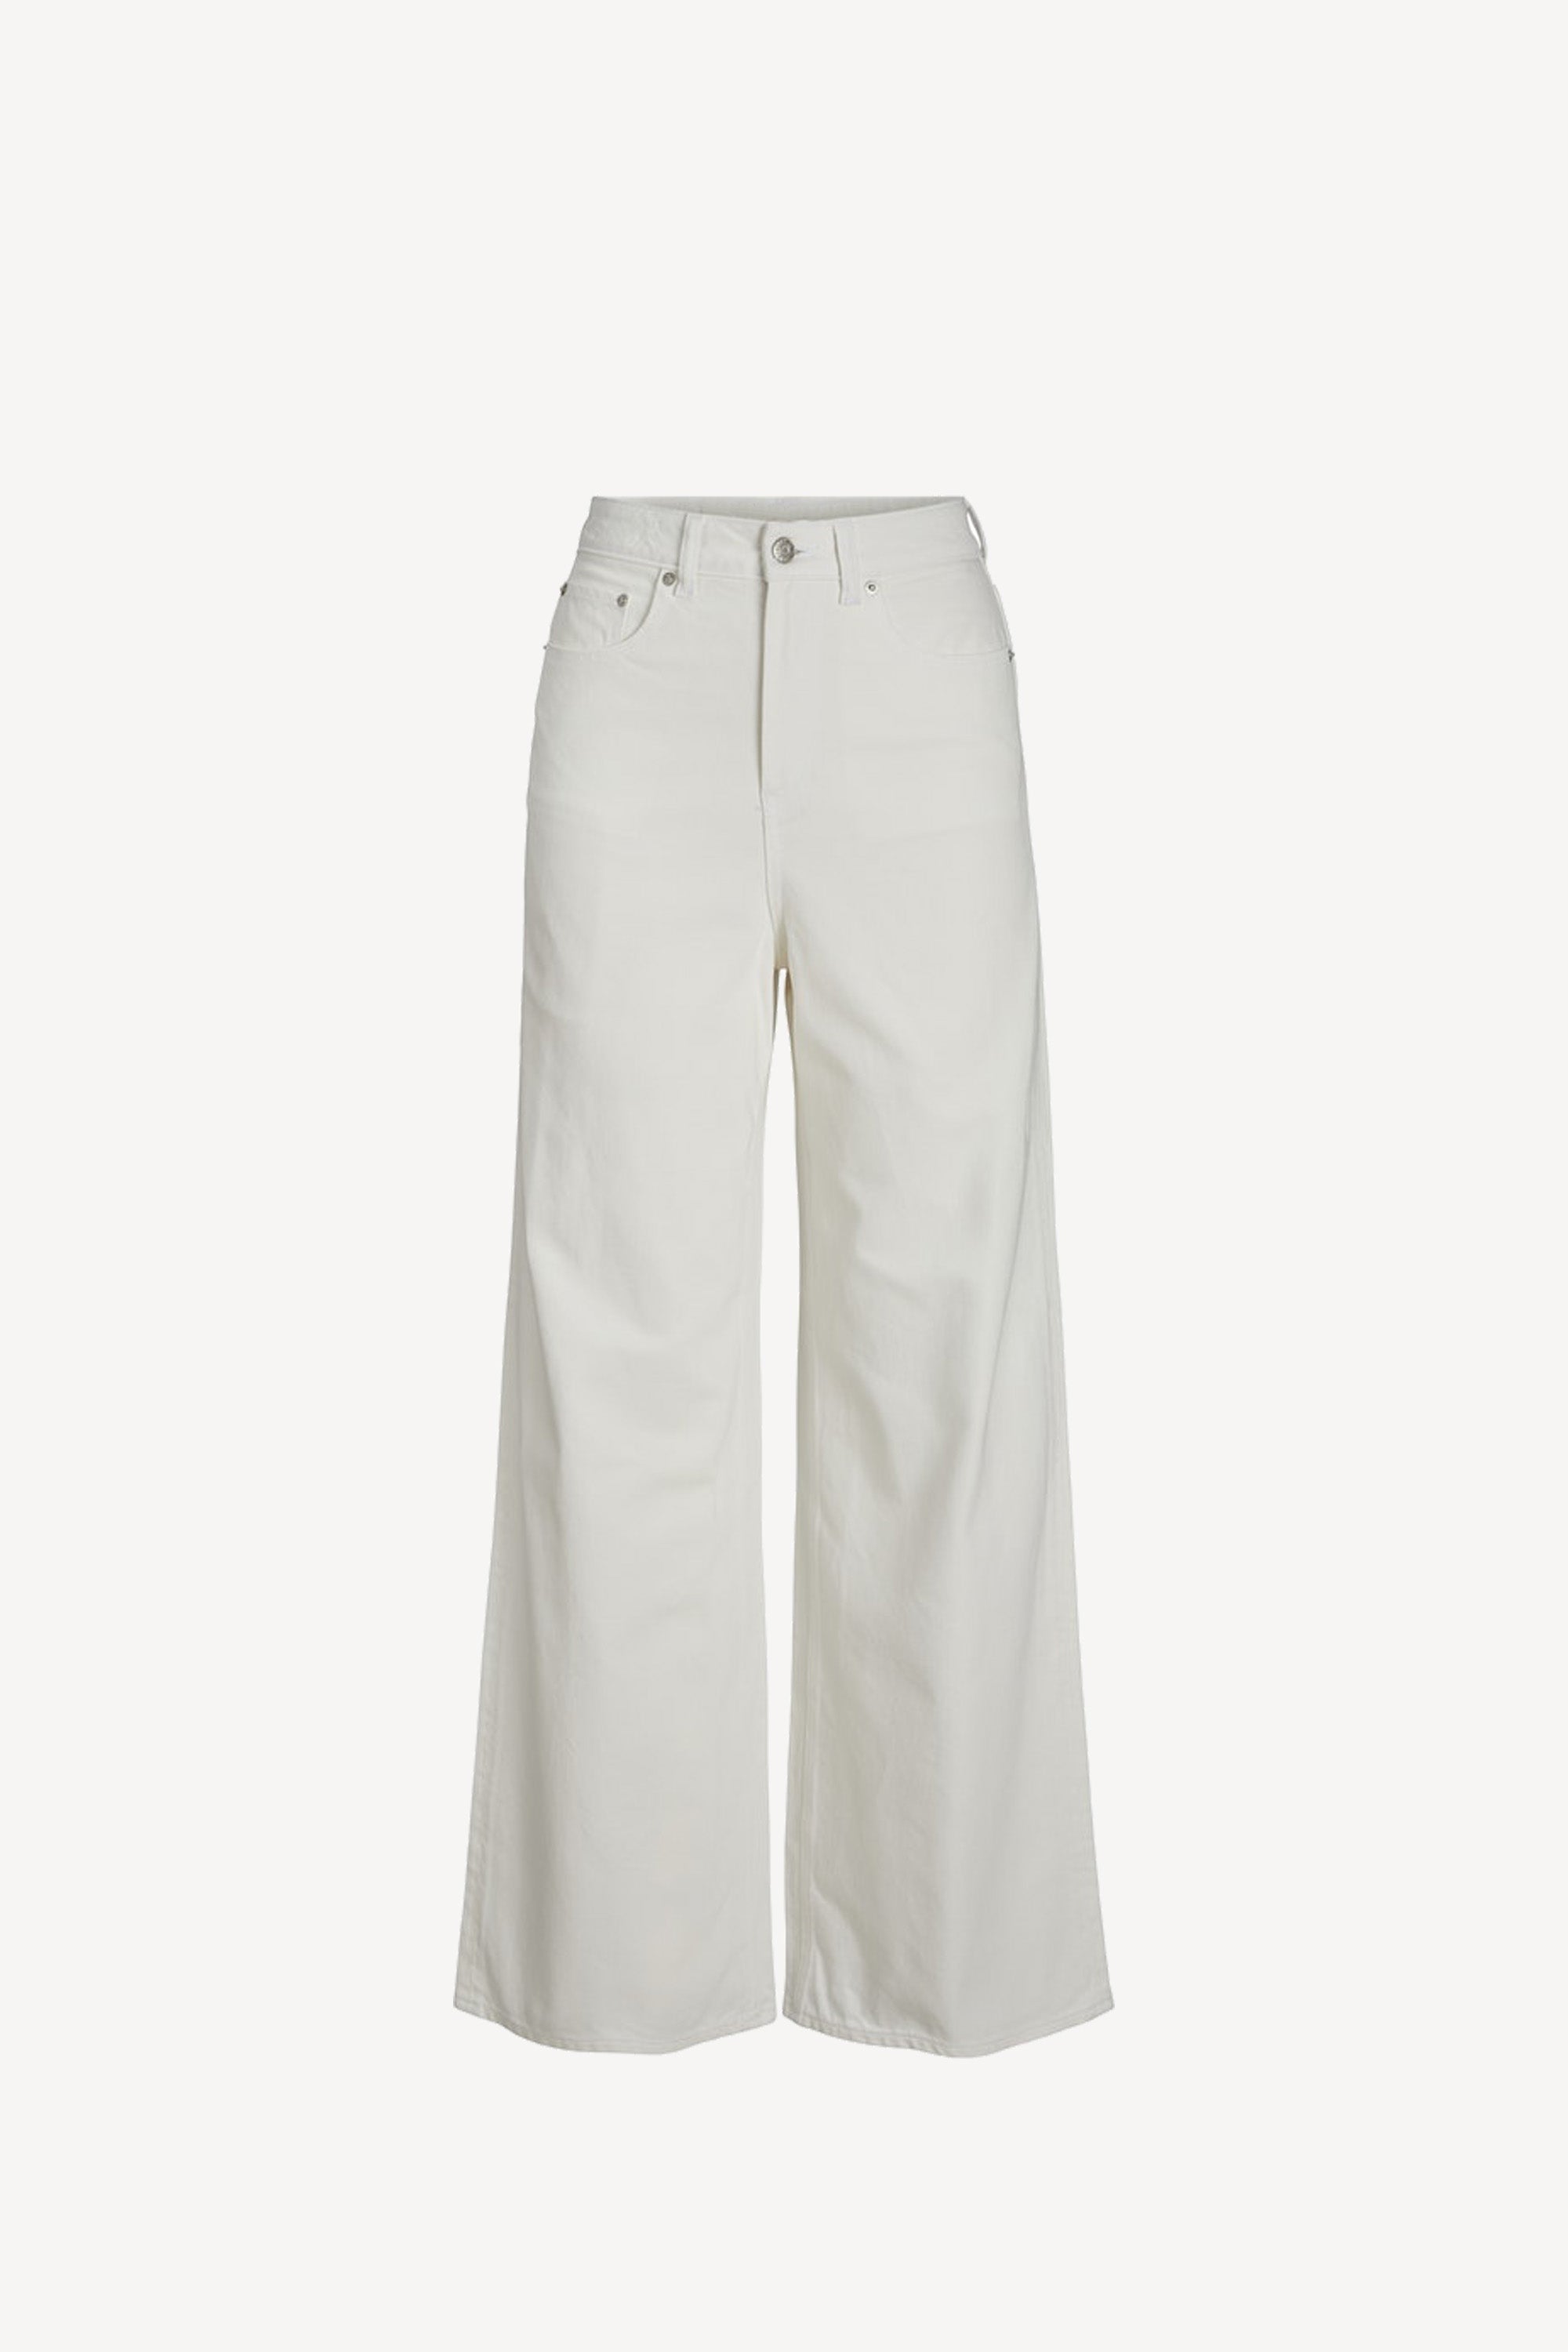 Yoki Jeans White